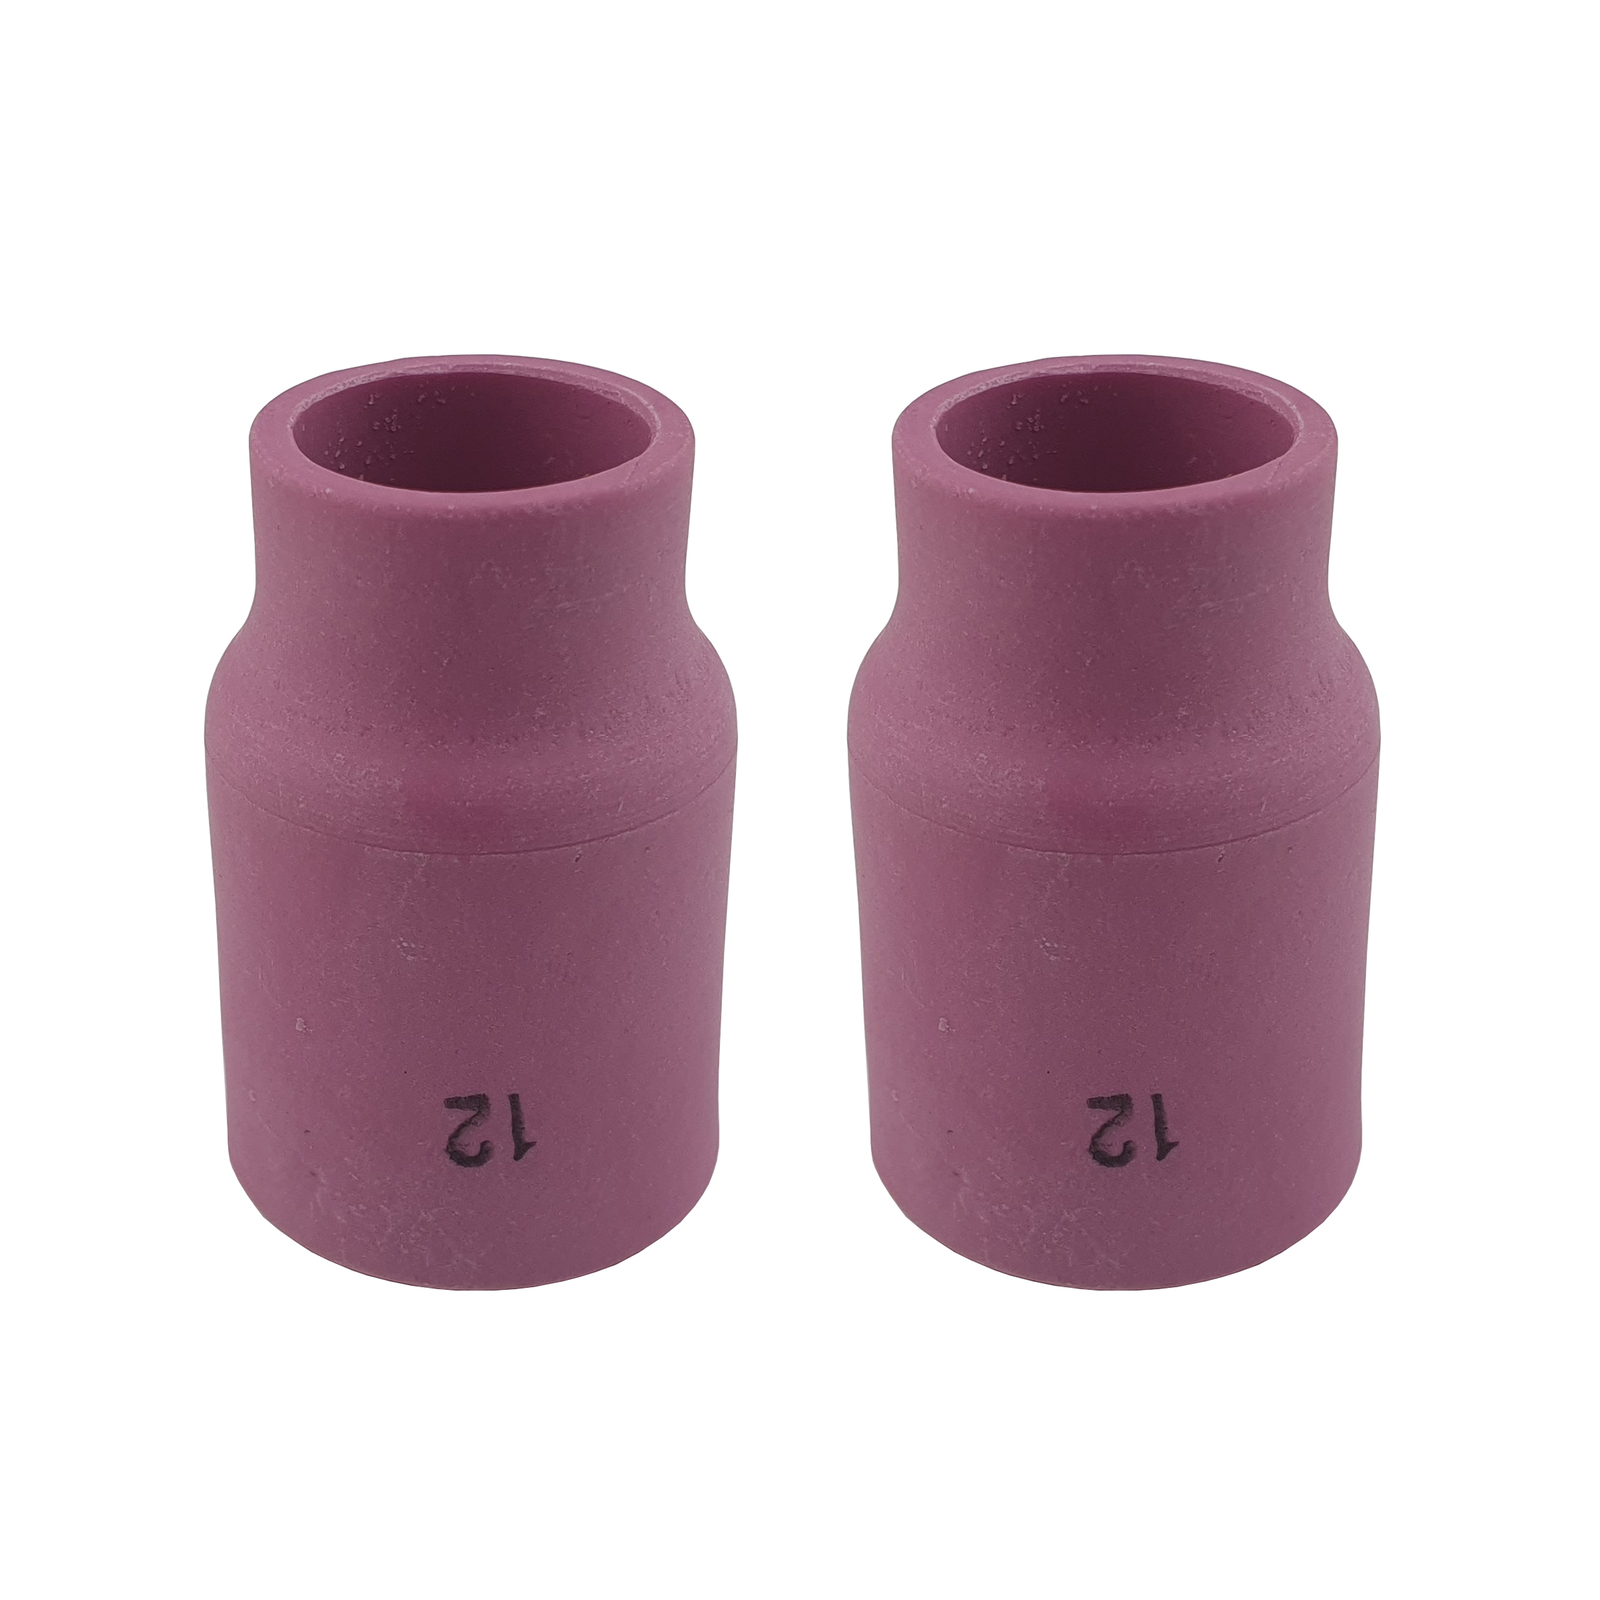 2 x TIG Ceramic Cup Nozzle #12 GAS LENS LARGE DIAMETER